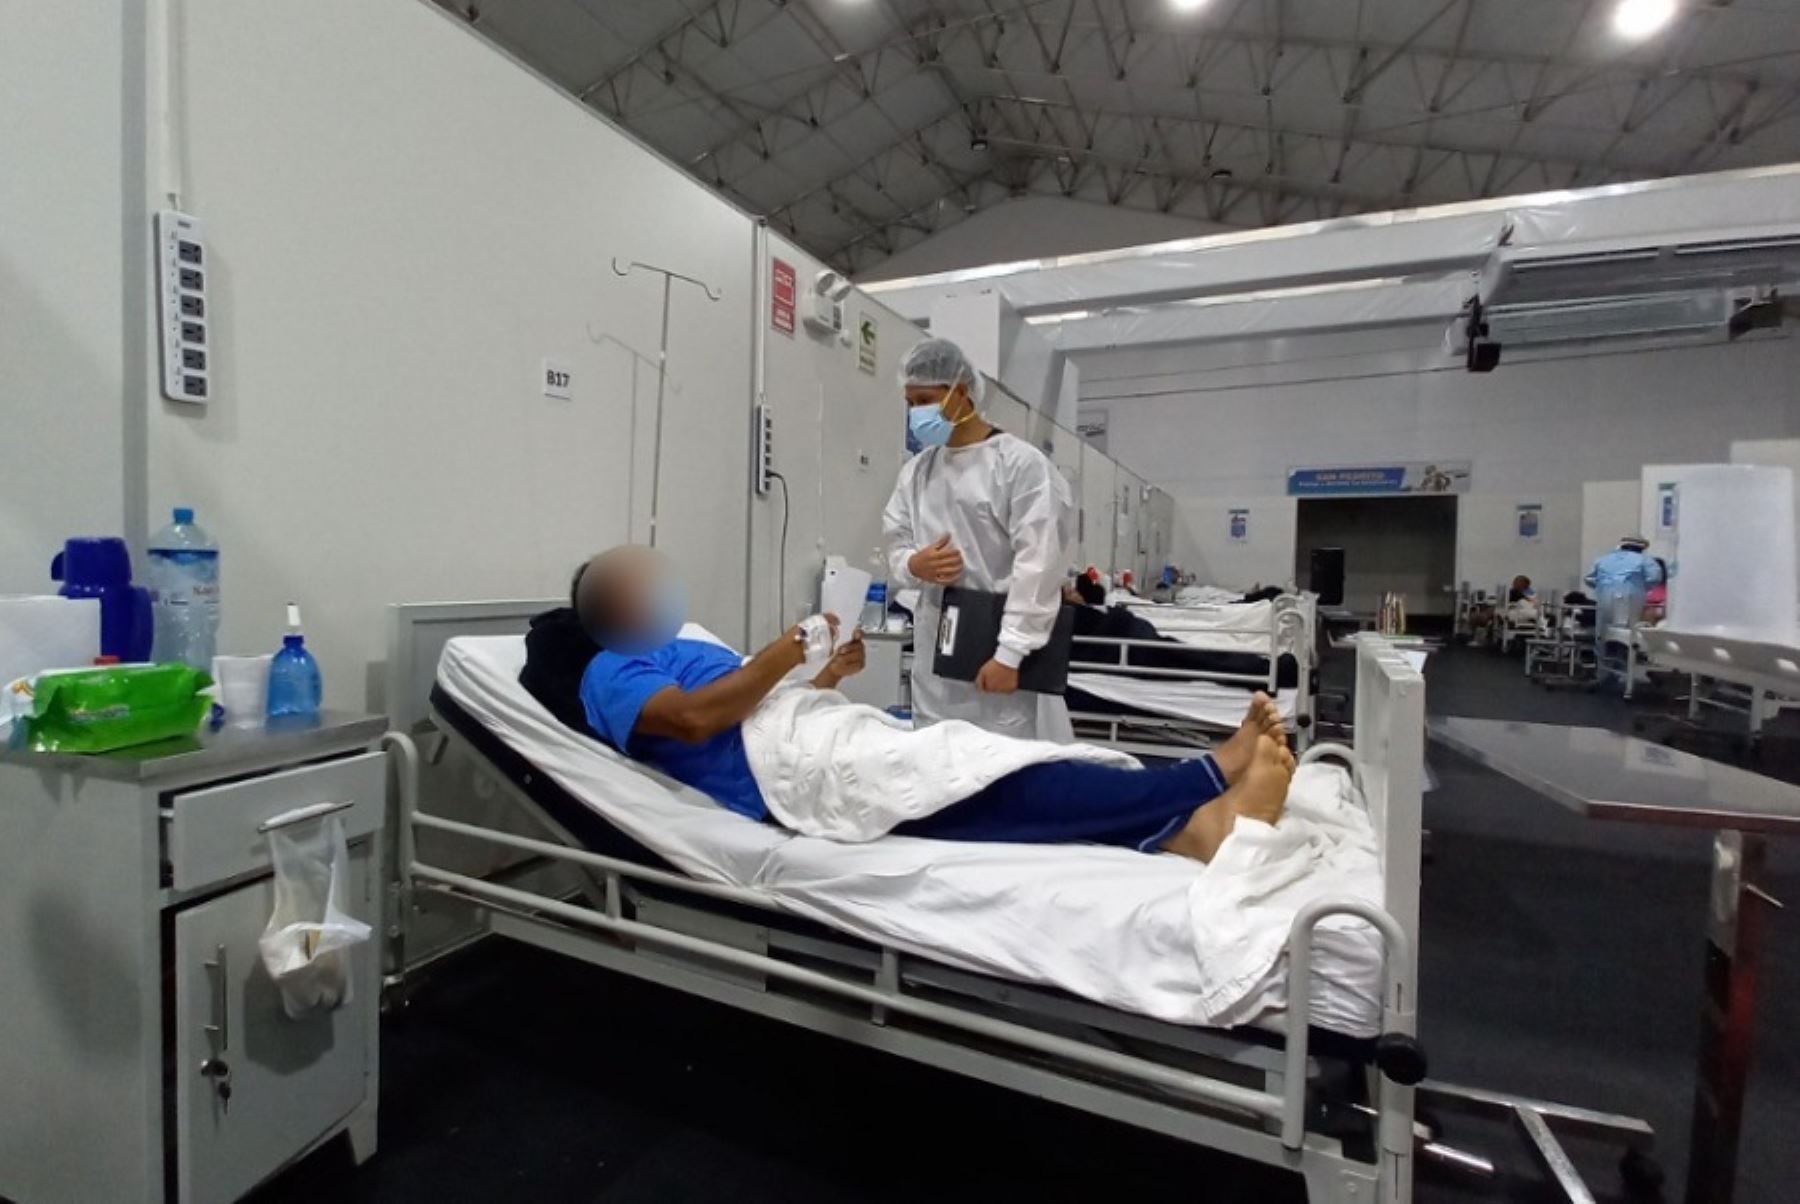 La región Áncash tiene actualmente una ocupación del 61% de camas de la Unidad de Cuidados Intensivos (UCI) con pacientes diagnosticados con la infección por covid-19, informó el jefe de Epidemiología de la Diresa Áncash, Jaime Salazar.